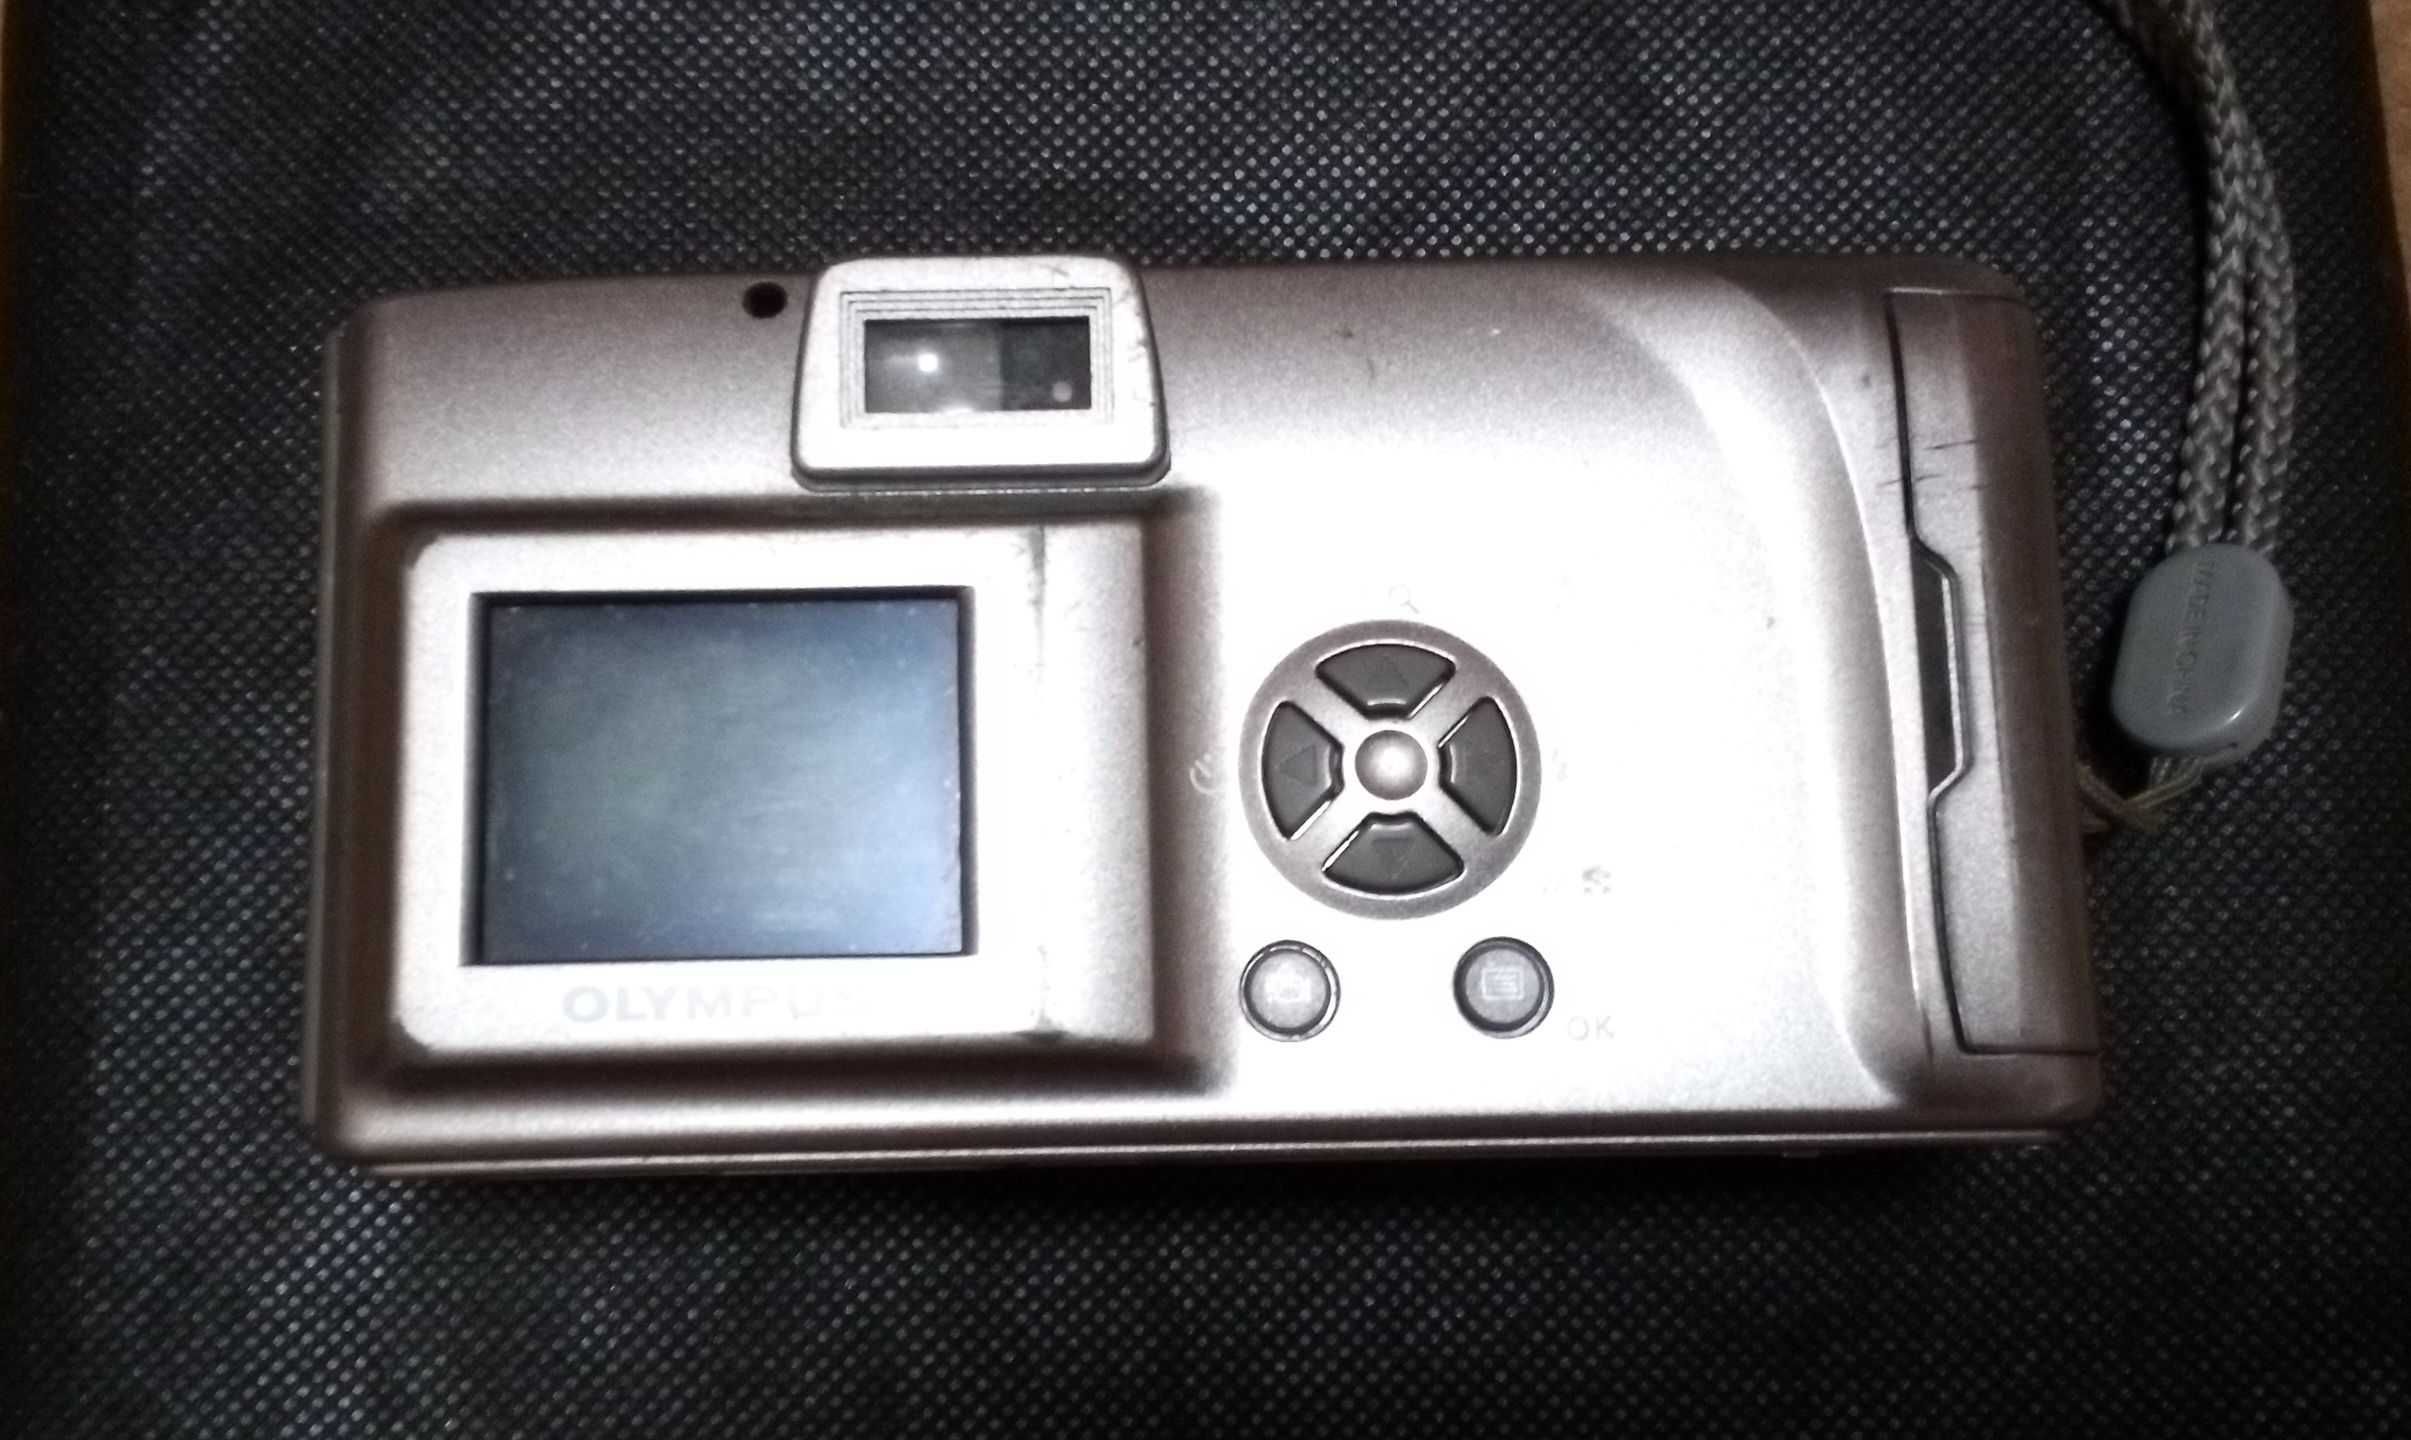 OLYMPUS D-380 Антикварний цифровий фотоапарат.